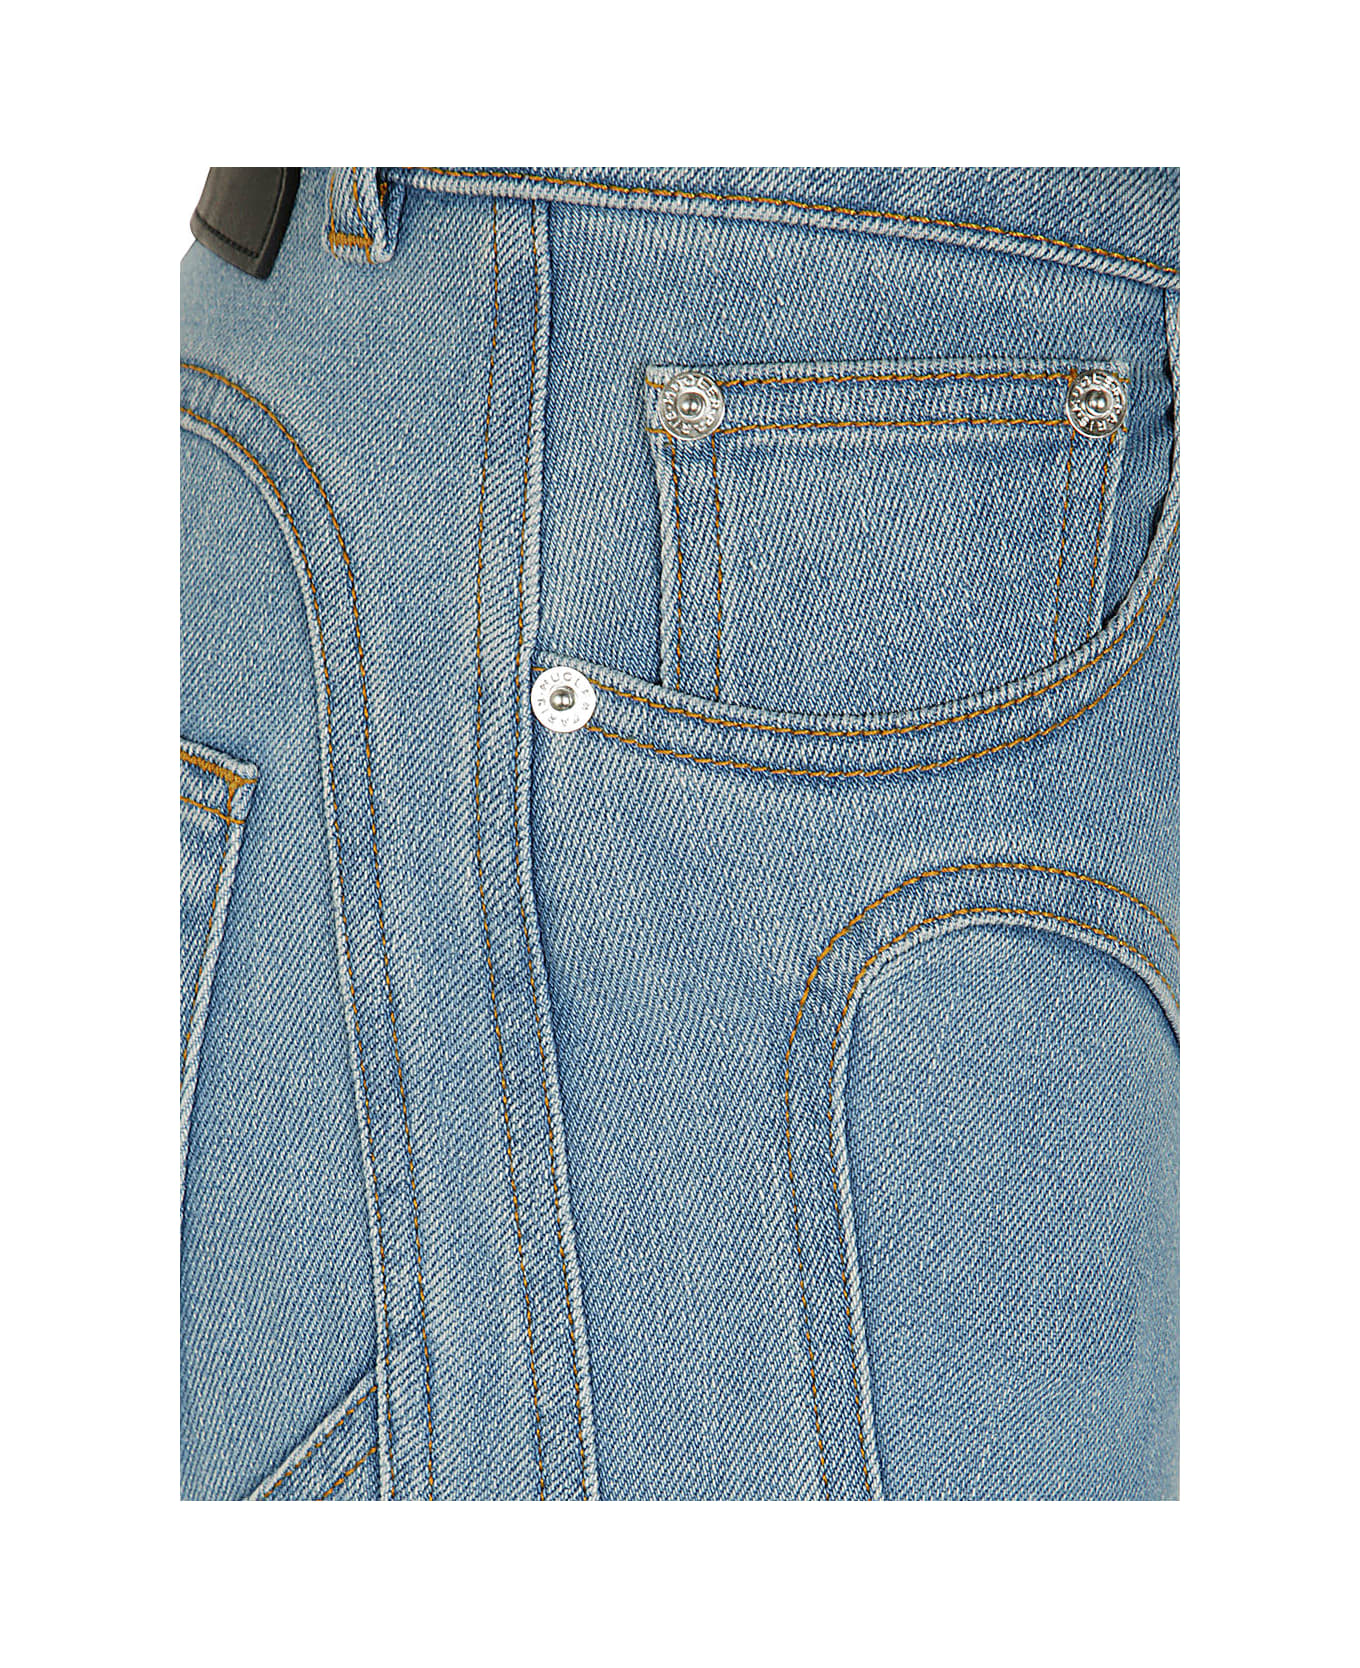 Mugler Pa0426 Jeans - Light Blue デニム